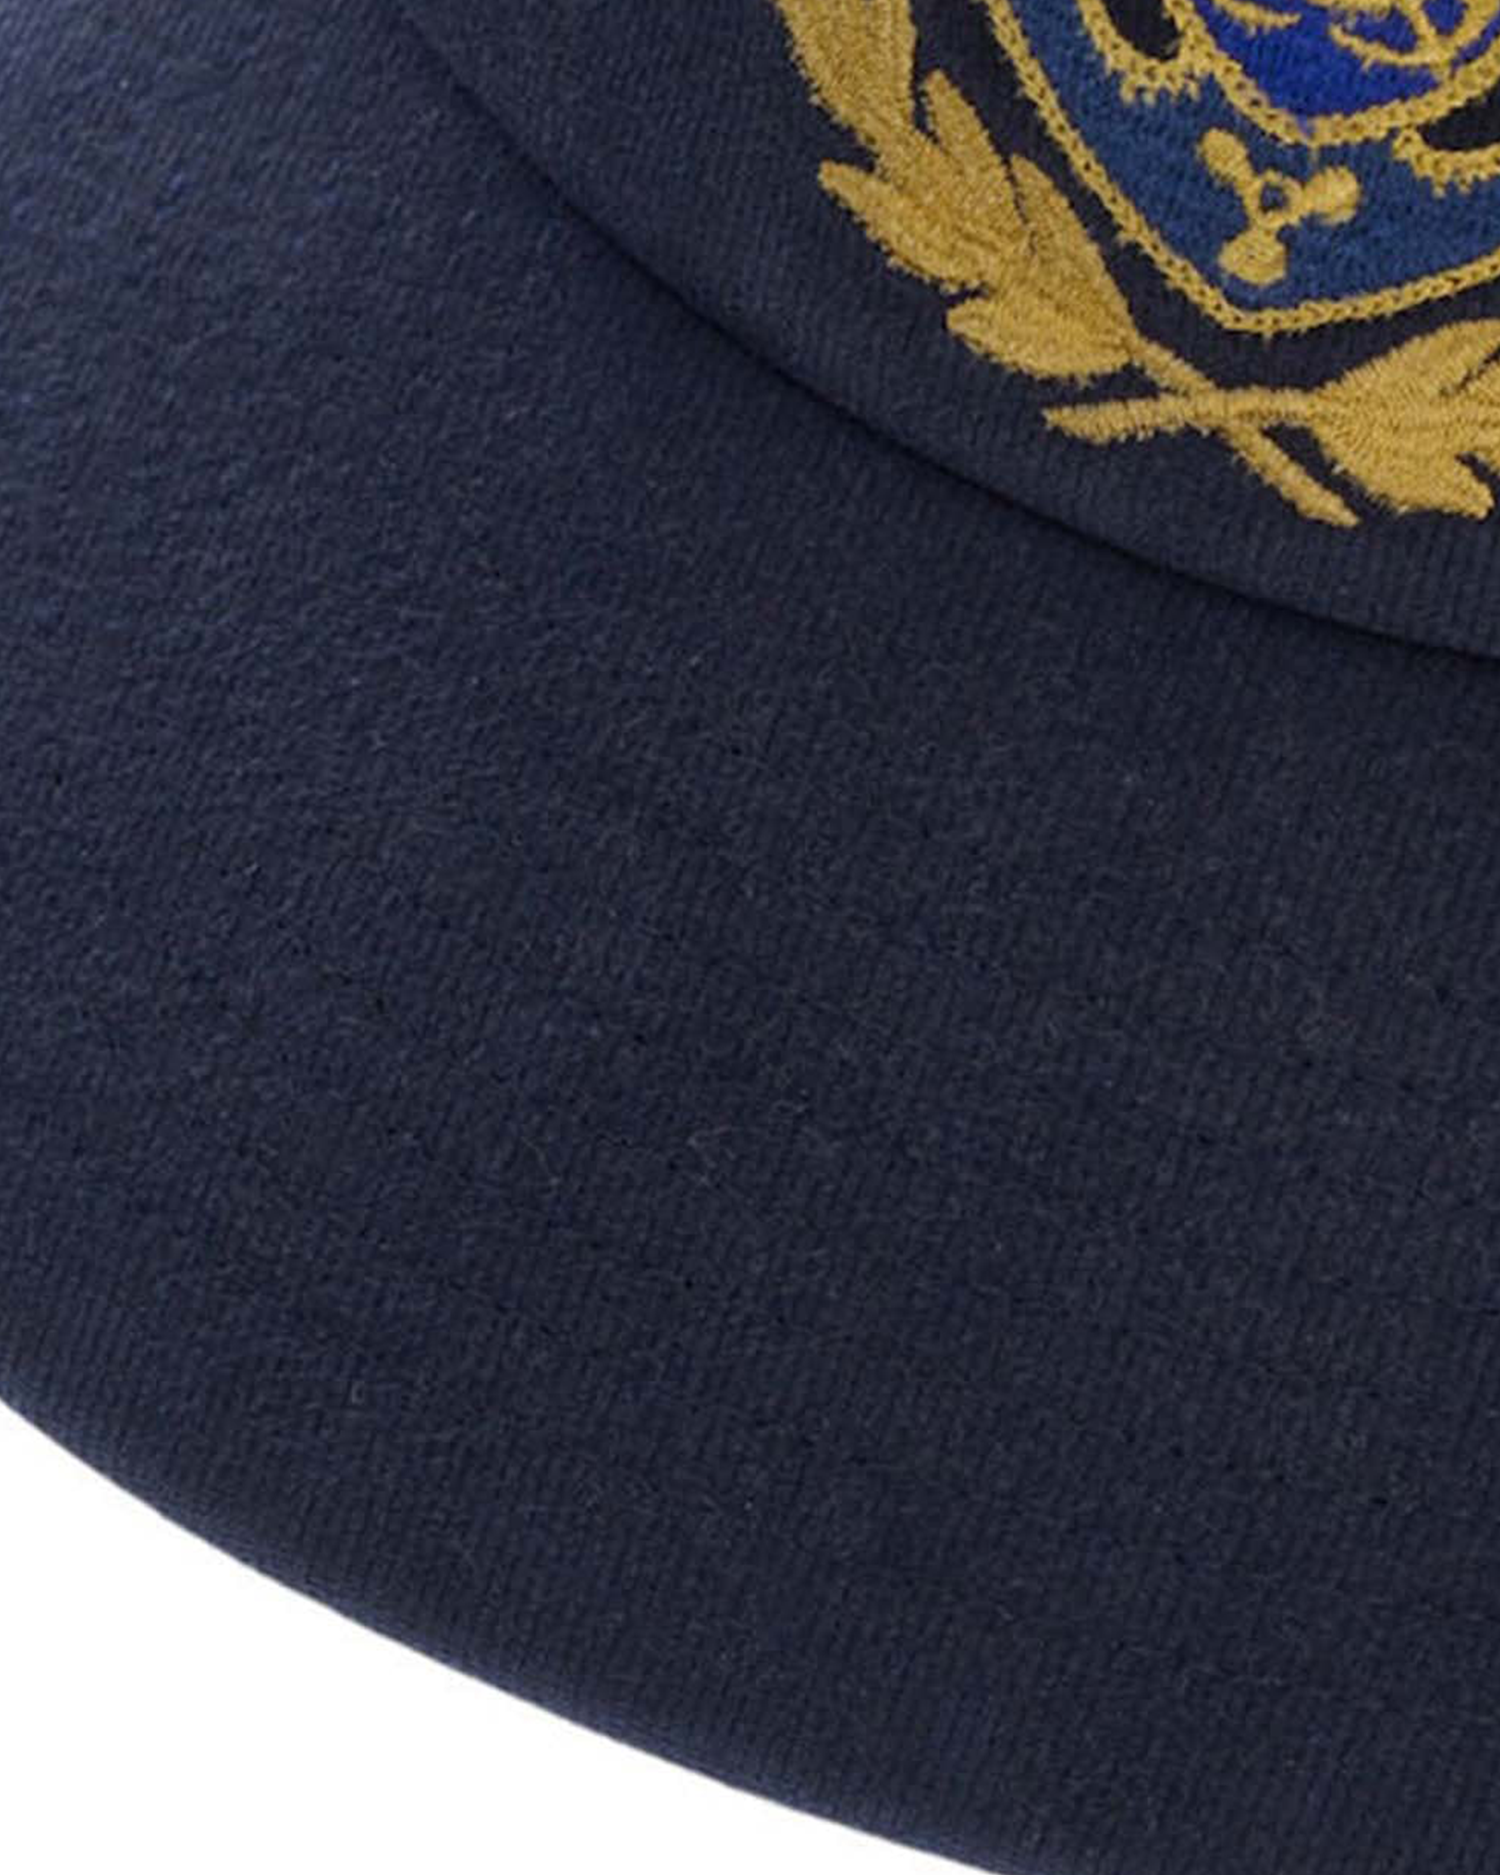 Retro Crown Sport Cap - Newport Navy